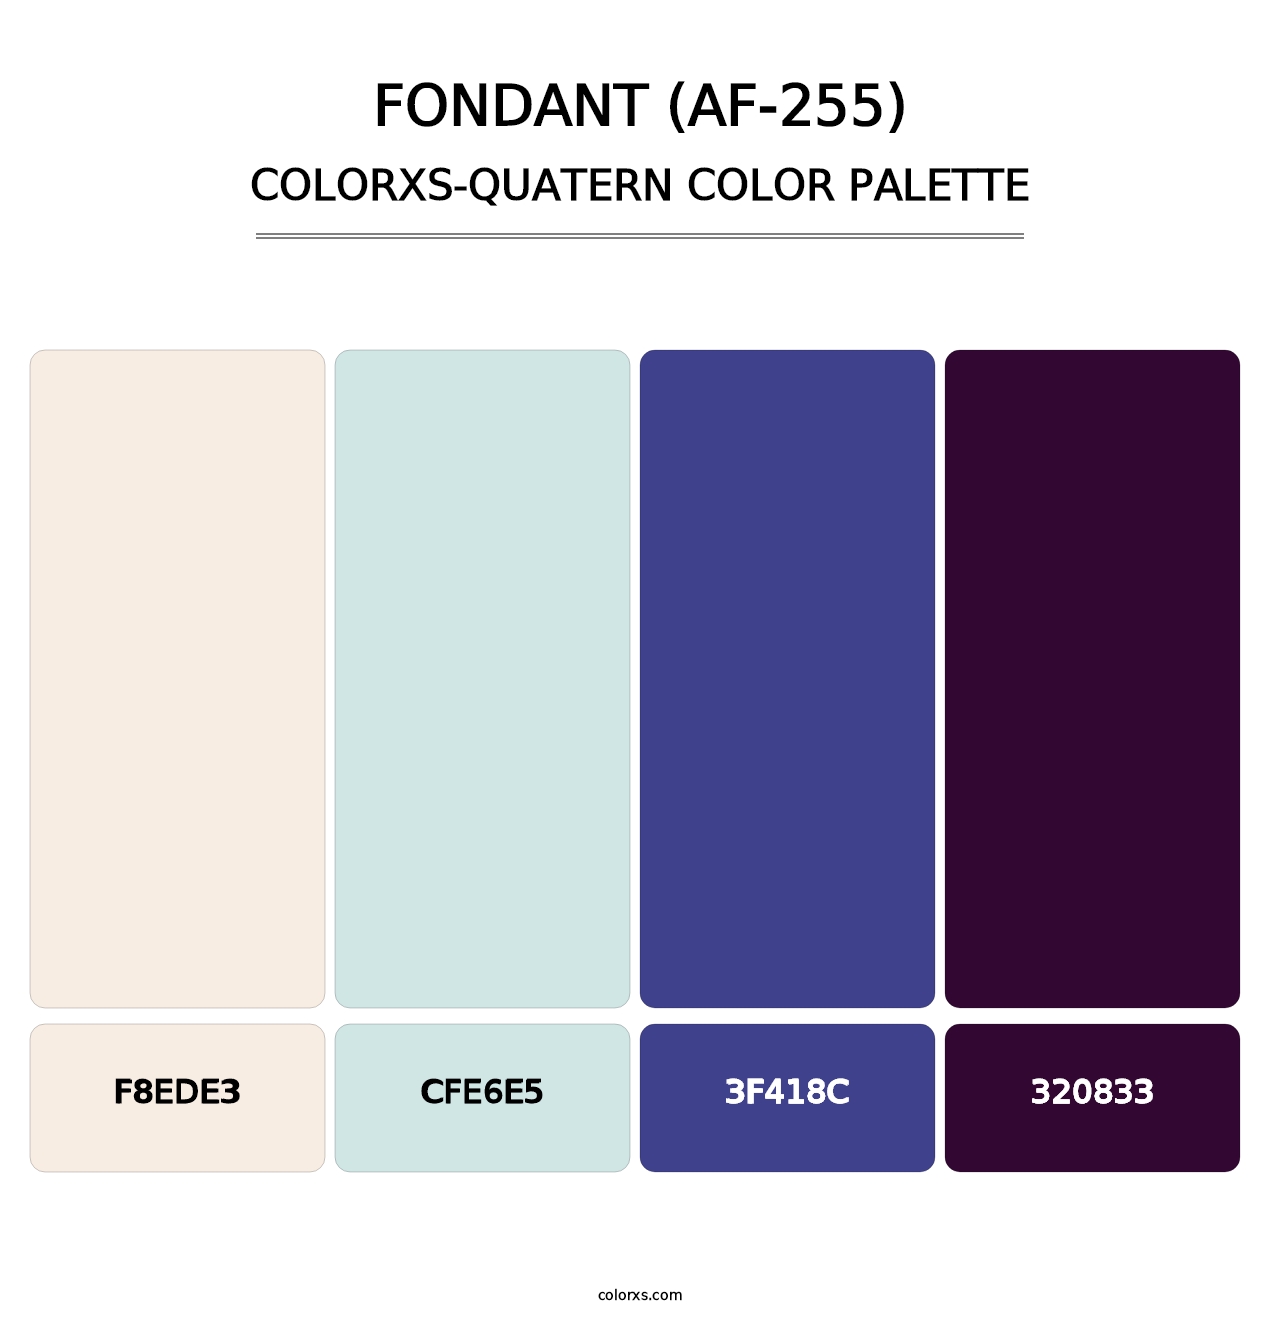 Fondant (AF-255) - Colorxs Quatern Palette